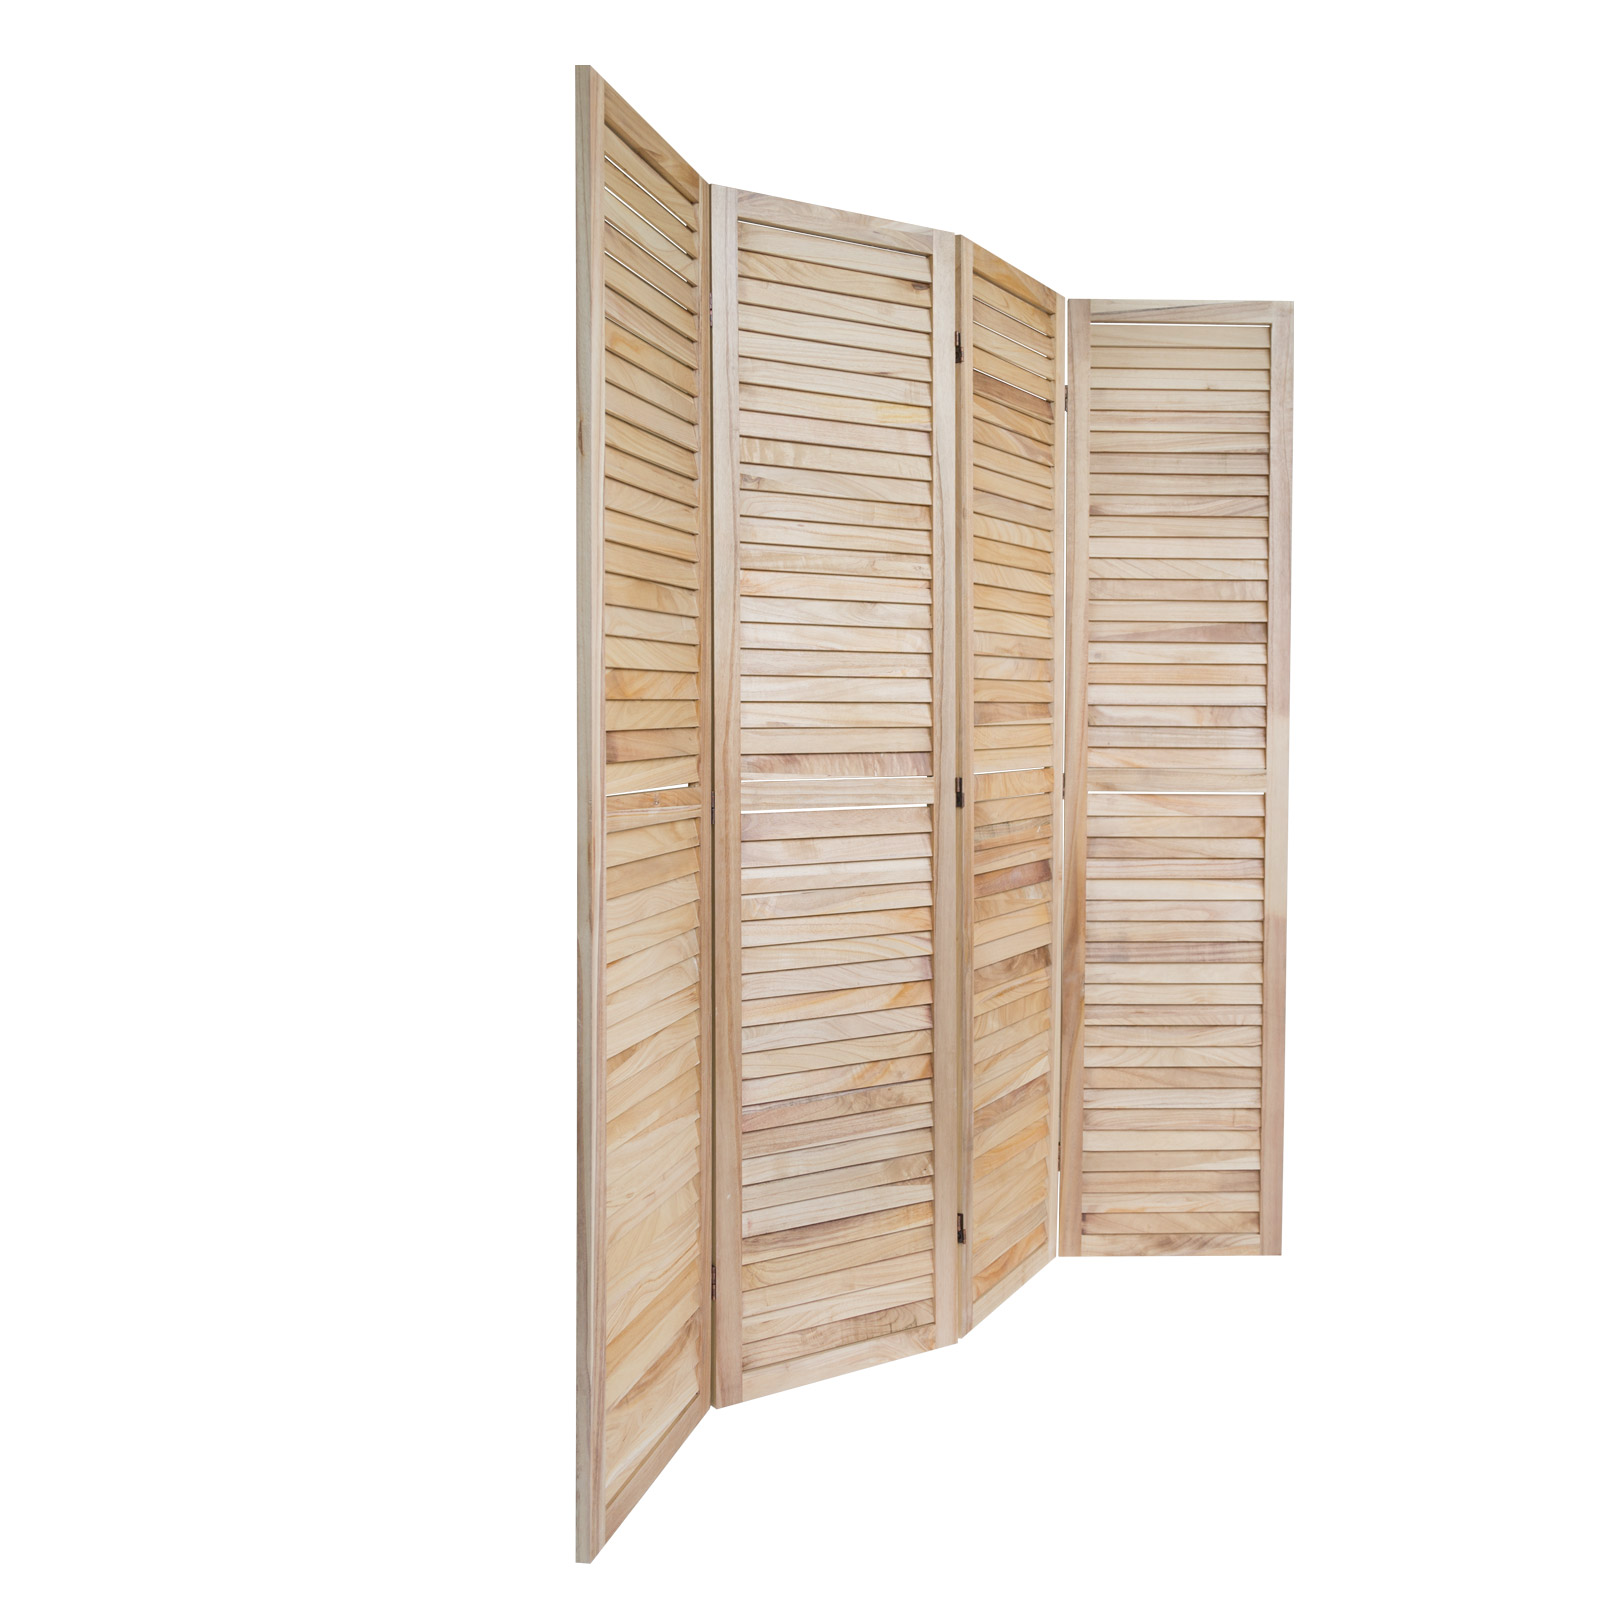 Paravent Raumteiler 4 fach Holz Trennwand spanische Wand Sichtschutz natur